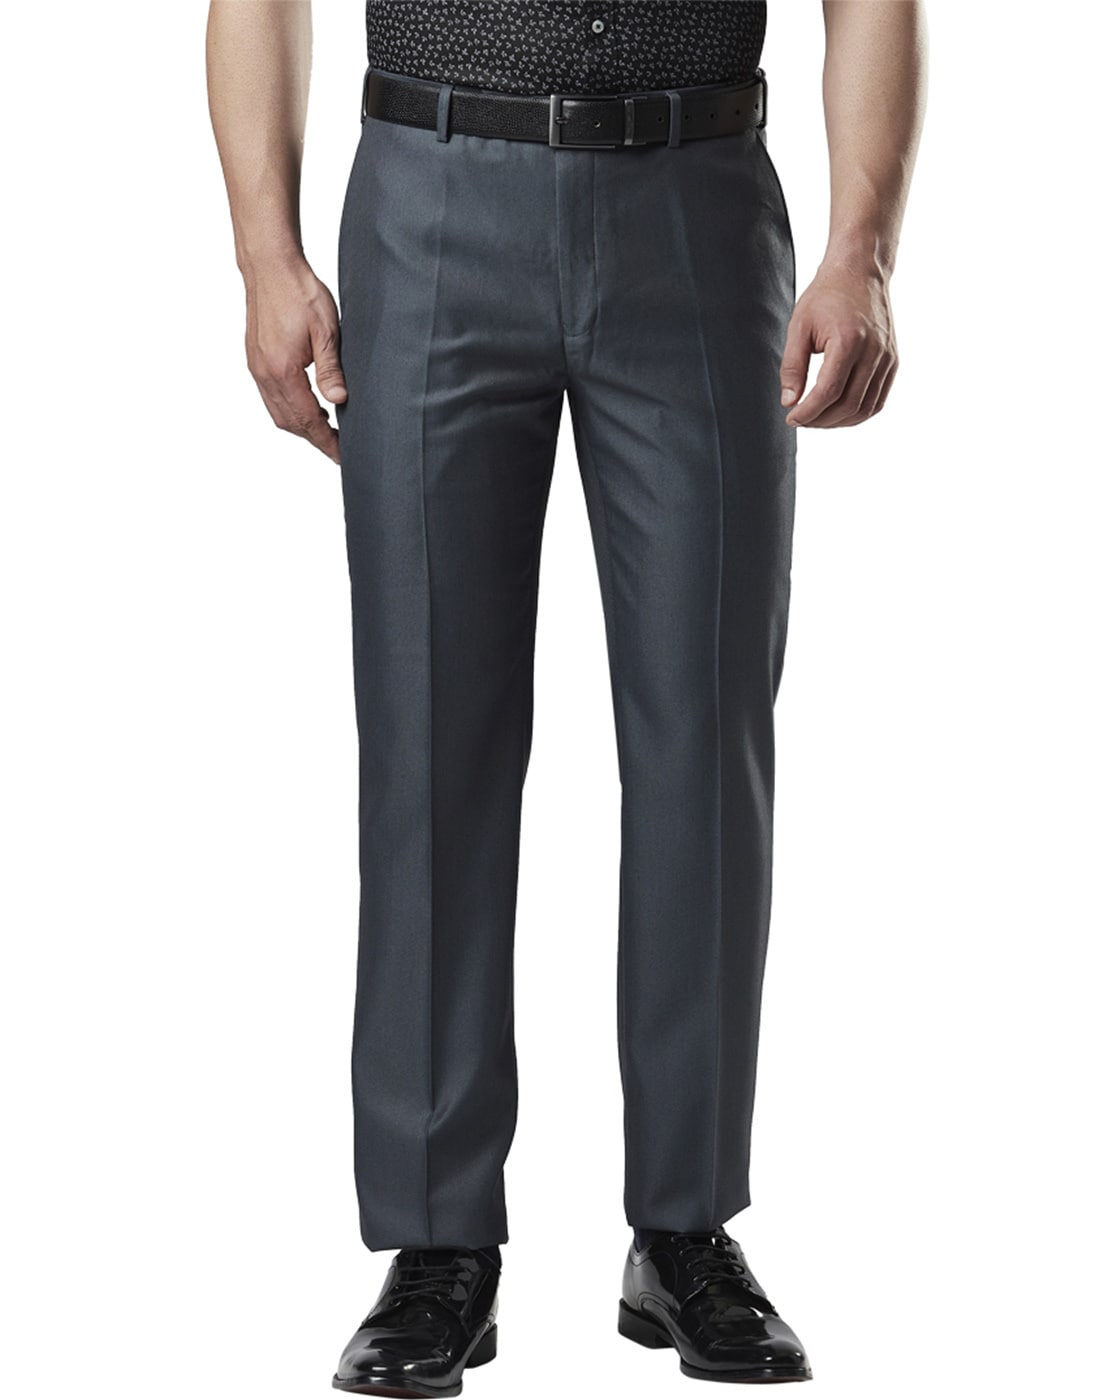 Next Look Tapered Men Dark Blue Trousers  Buy Next Look Tapered Men Dark  Blue Trousers Online at Best Prices in India  Flipkartcom